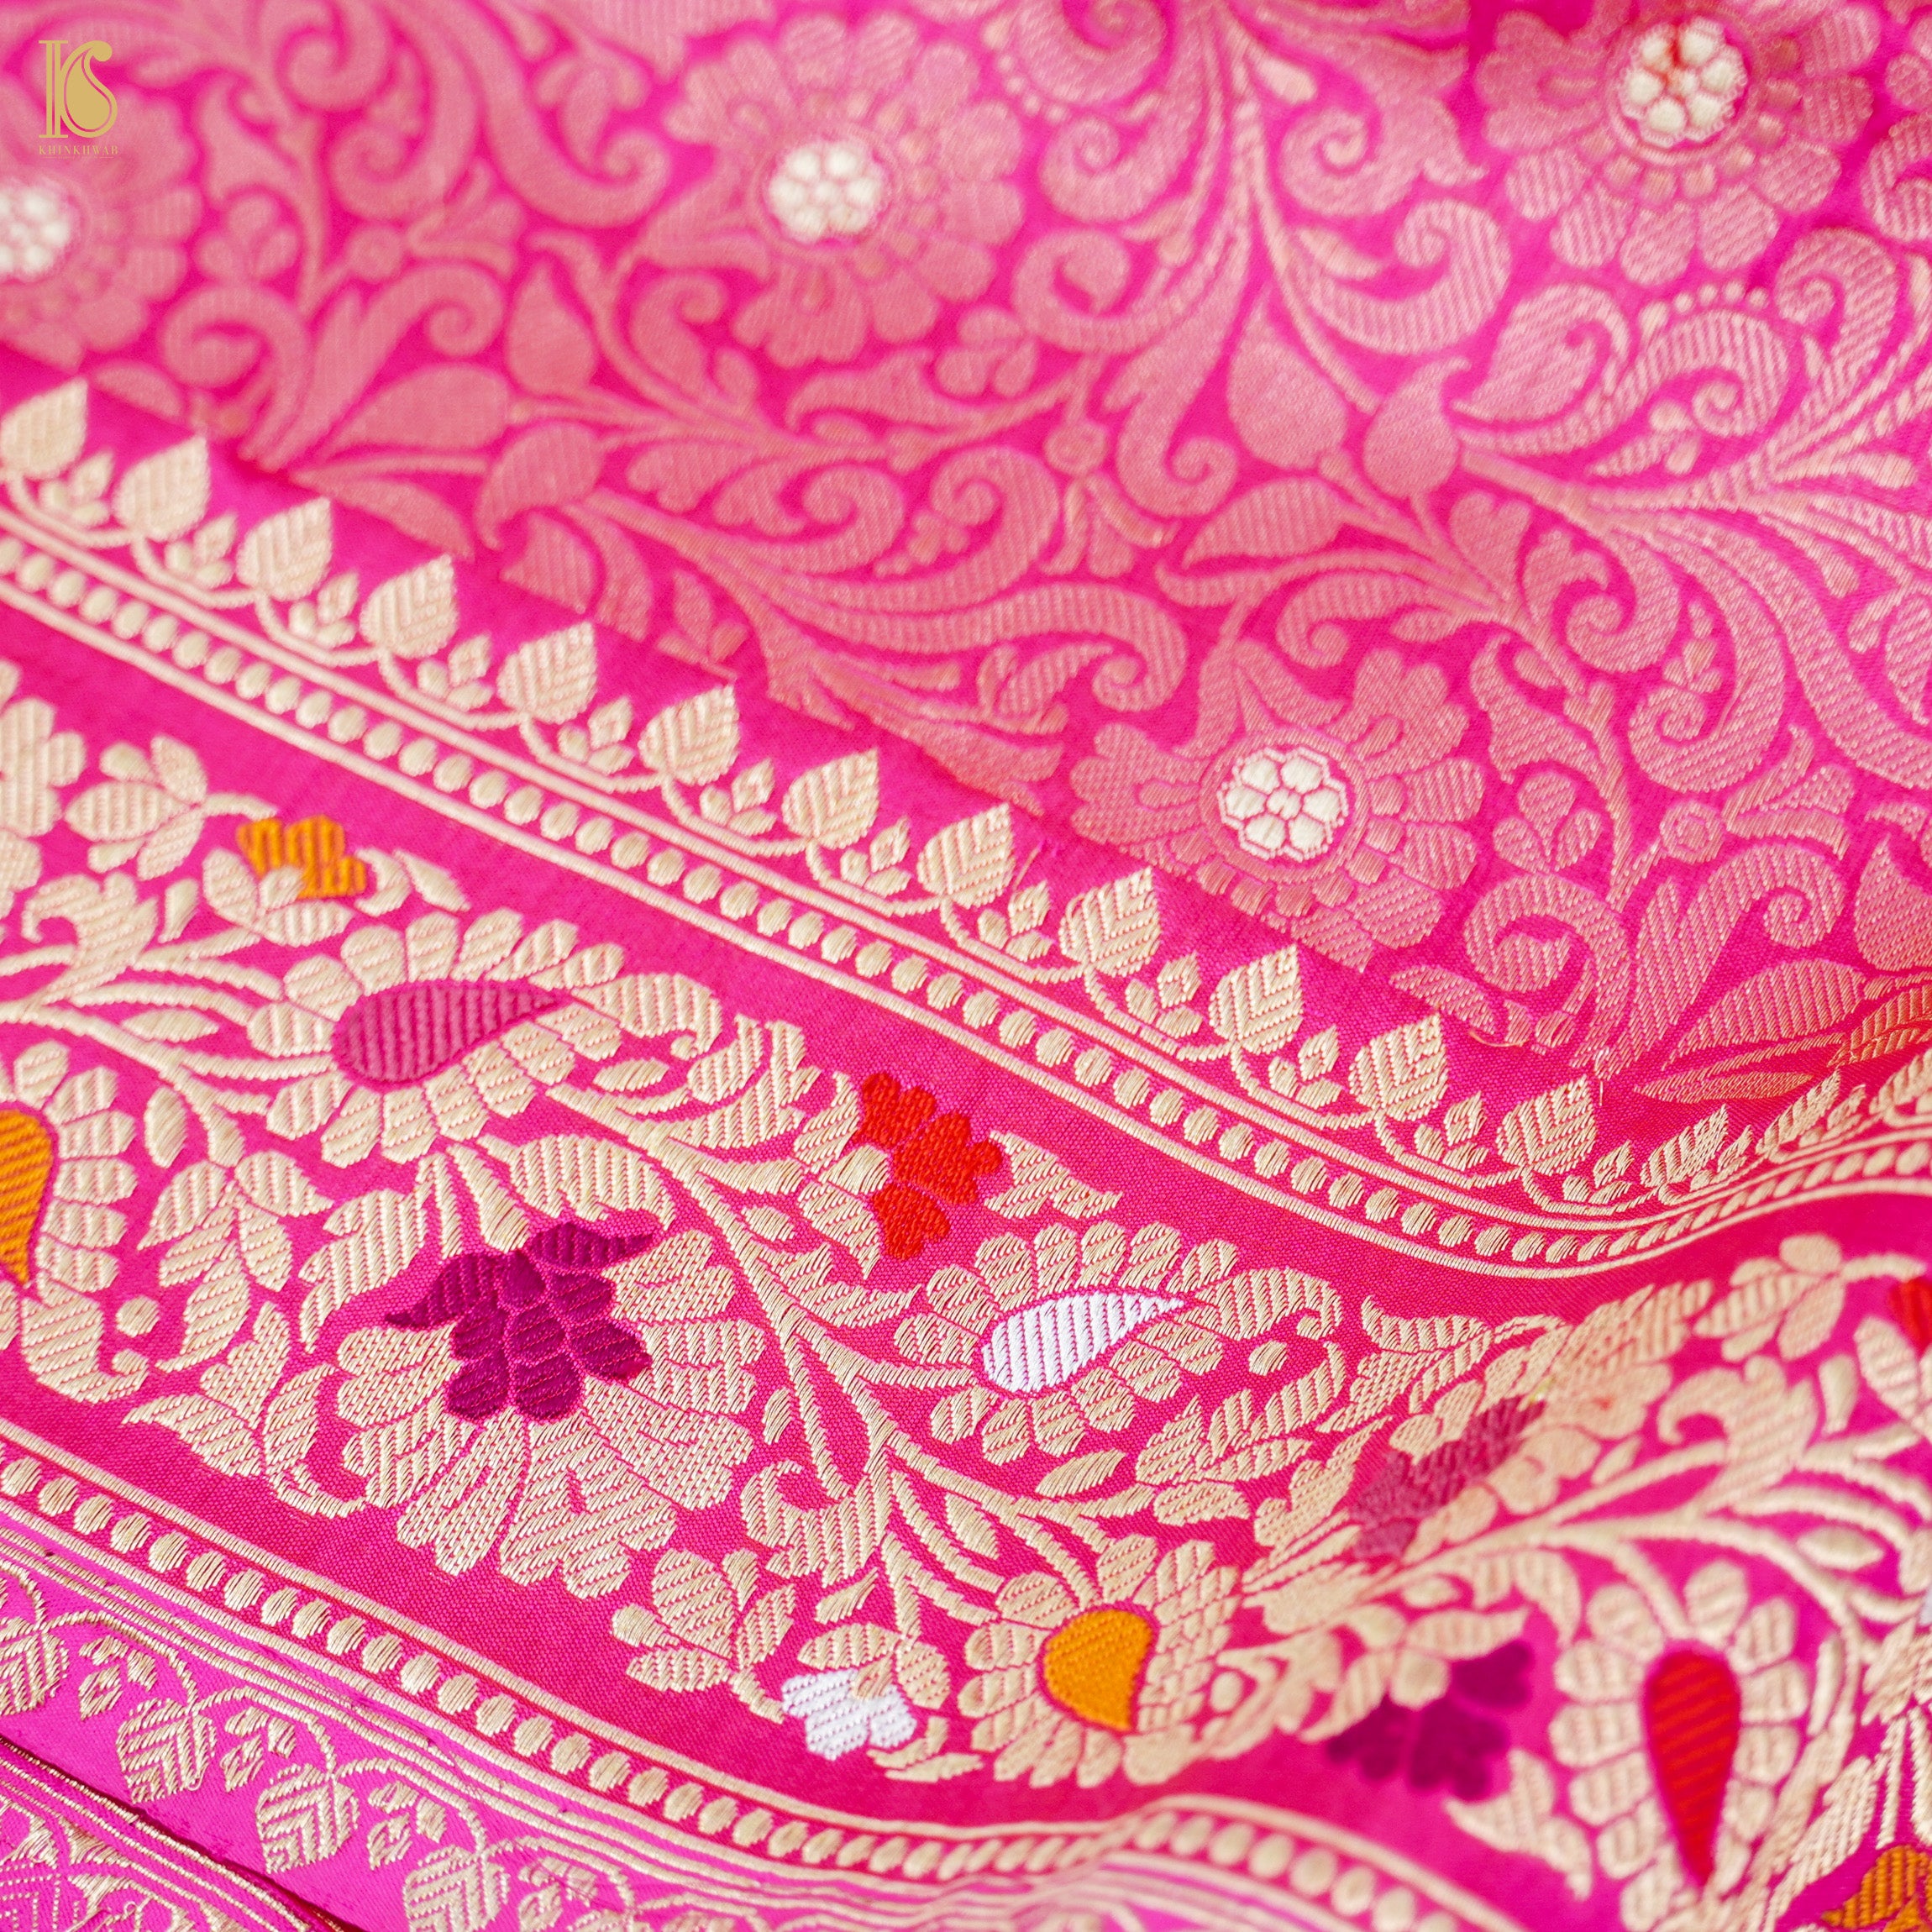 Handloom Banarasi Pure Katan Silk Cerise Pink Tanchoi Saree - Khinkhwab